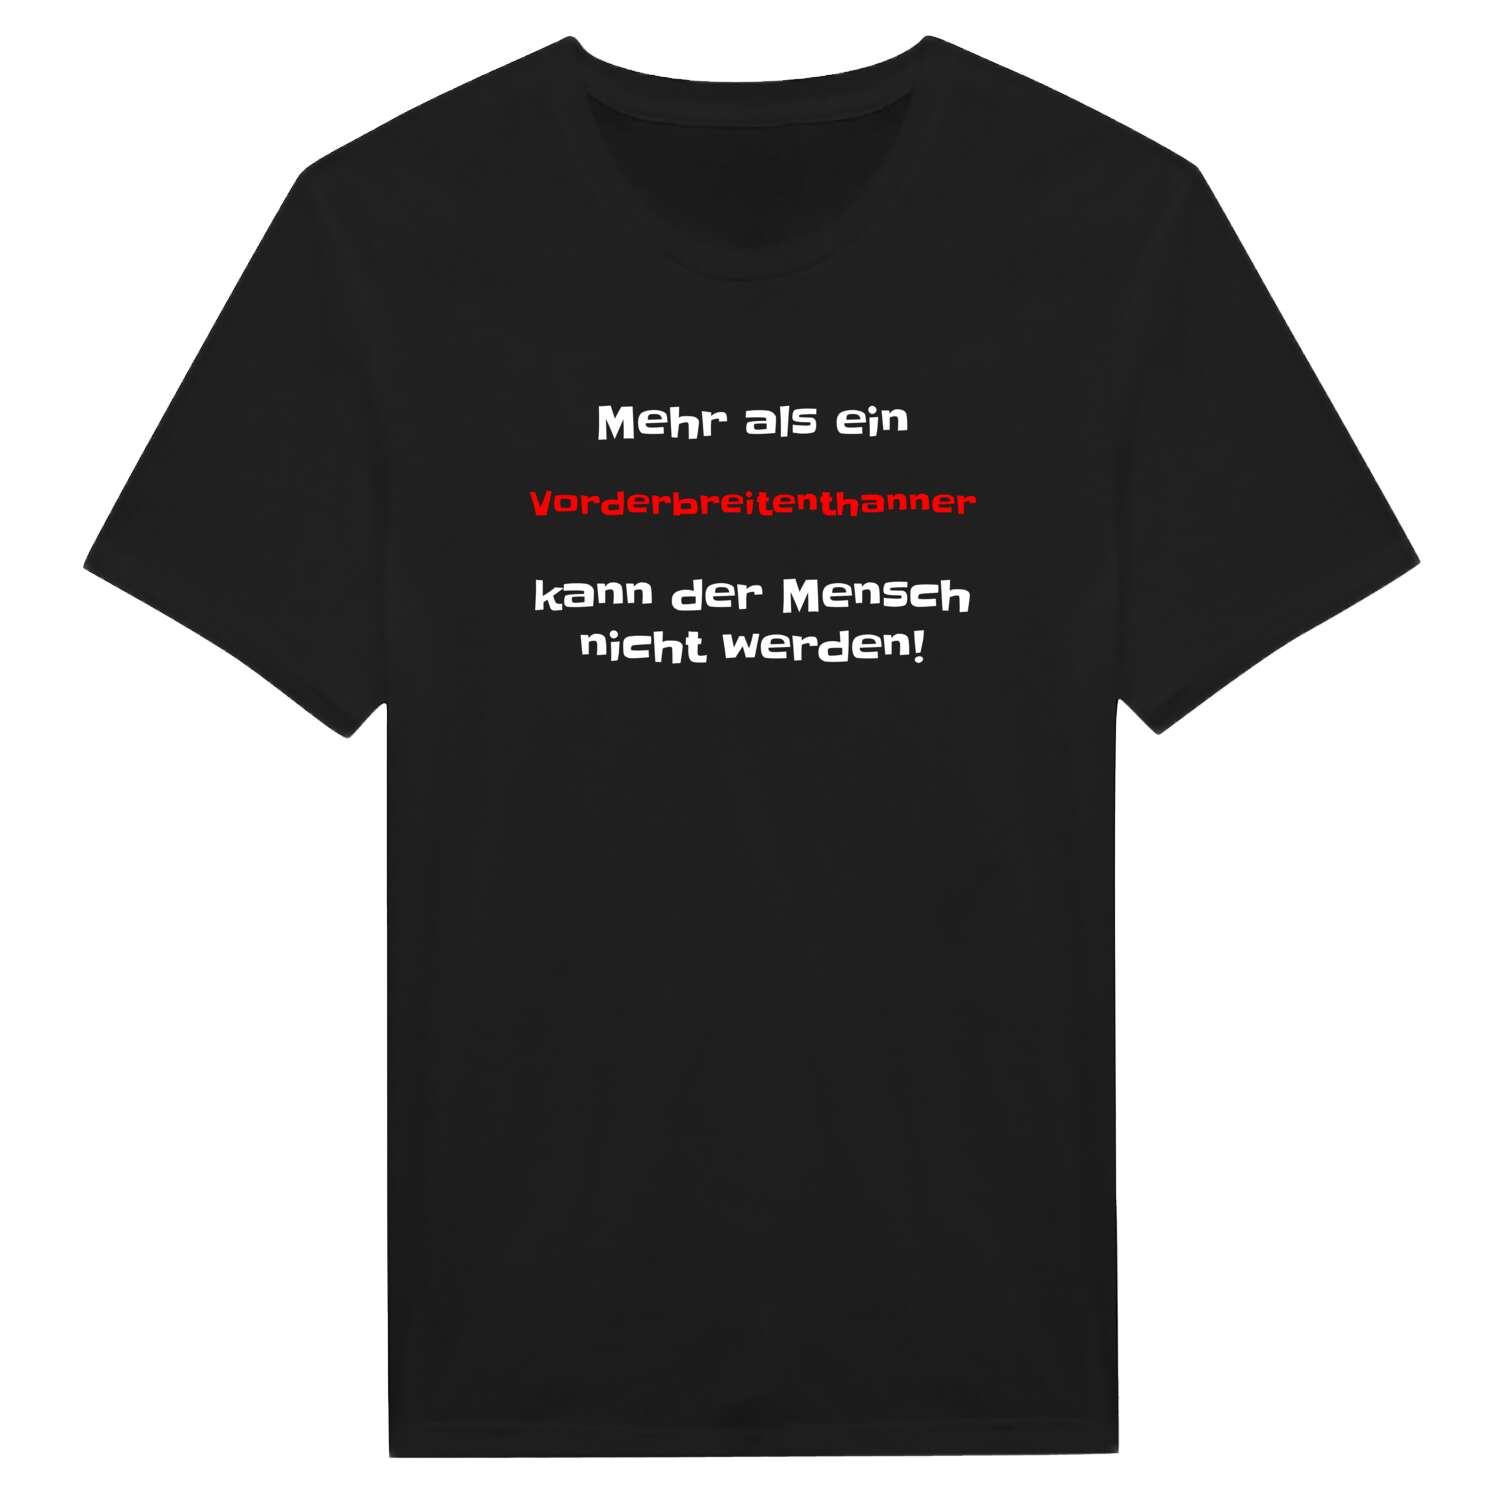 Vorderbreitenthann T-Shirt »Mehr als ein«